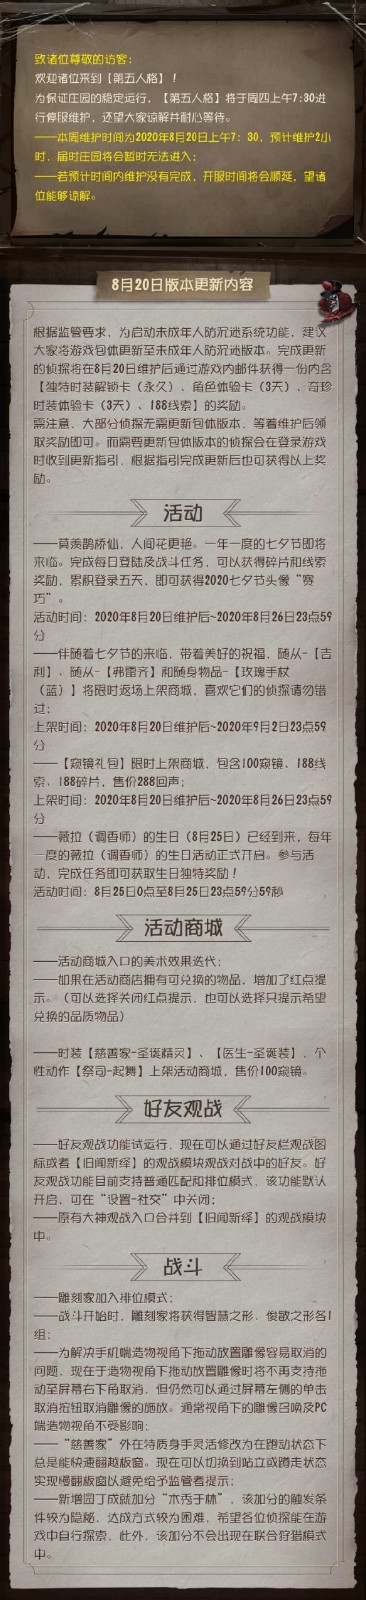 《第五人格》8月20日更新公告-第五人格七夕节玩法介绍